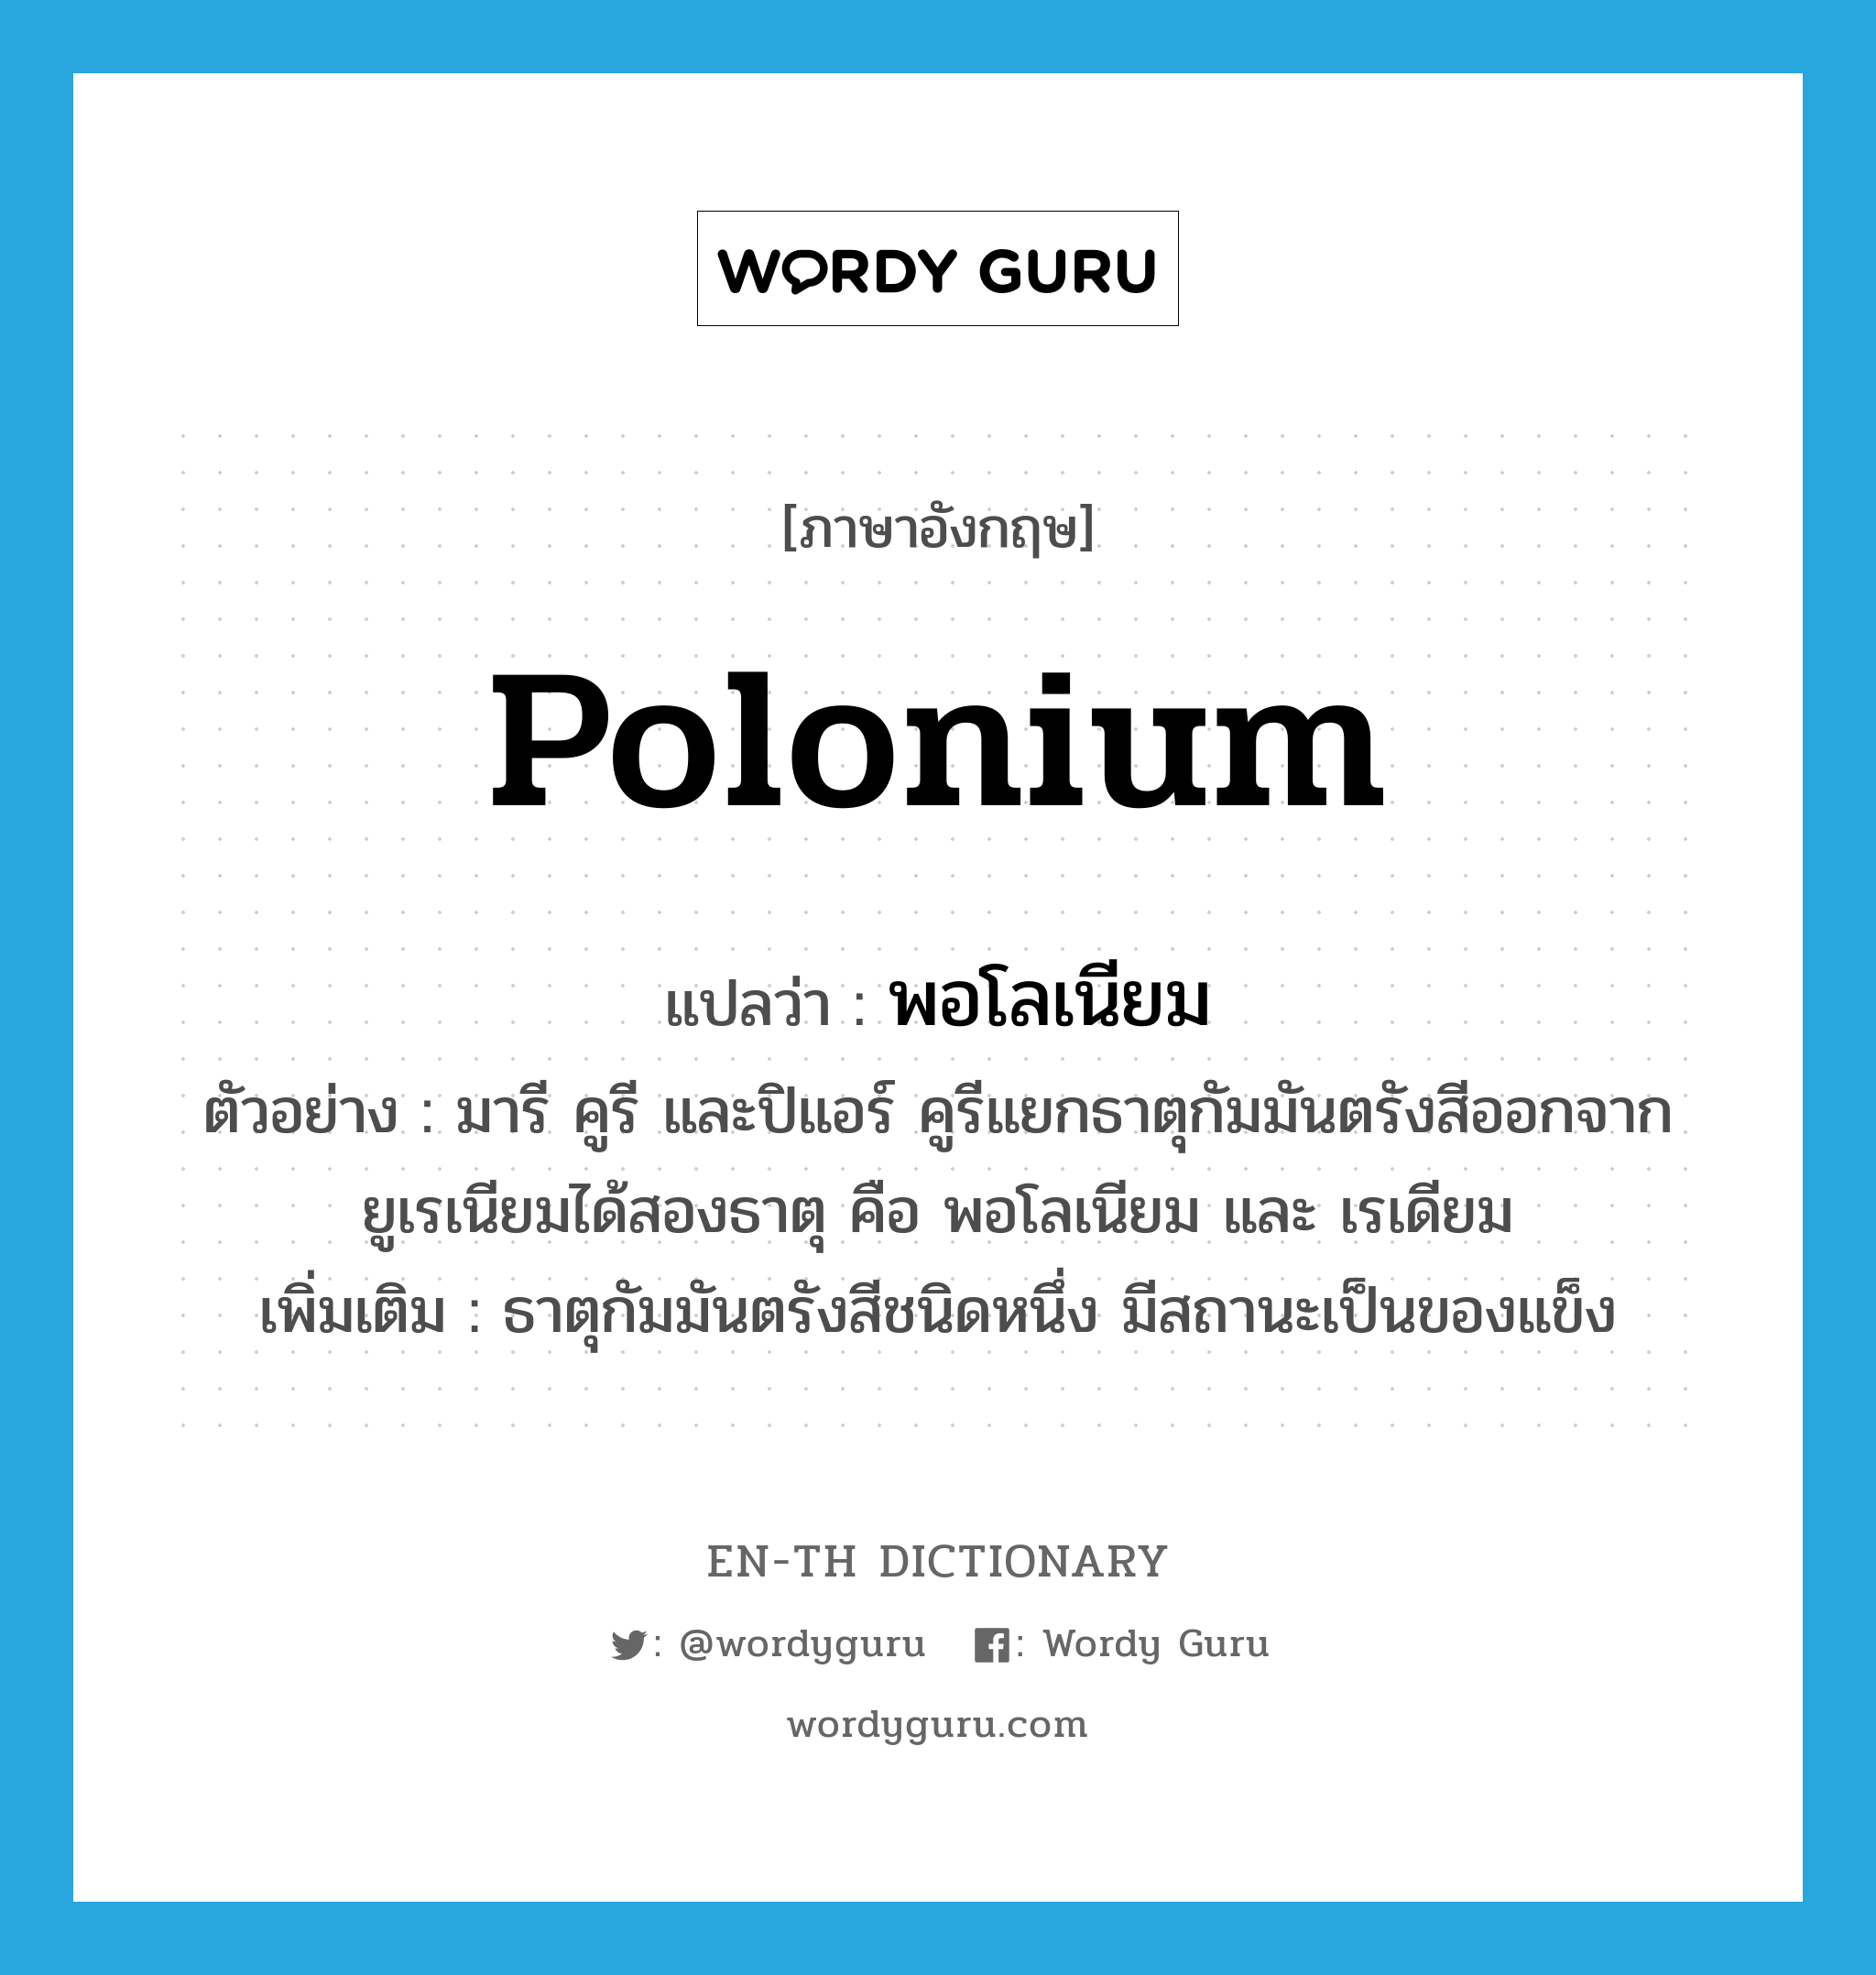 polonium แปลว่า?, คำศัพท์ภาษาอังกฤษ polonium แปลว่า พอโลเนียม ประเภท N ตัวอย่าง มารี คูรี และปิแอร์ คูรีแยกธาตุกัมมันตรังสีออกจากยูเรเนียมได้สองธาตุ คือ พอโลเนียม และ เรเดียม เพิ่มเติม ธาตุกัมมันตรังสีชนิดหนึ่ง มีสถานะเป็นของแข็ง หมวด N